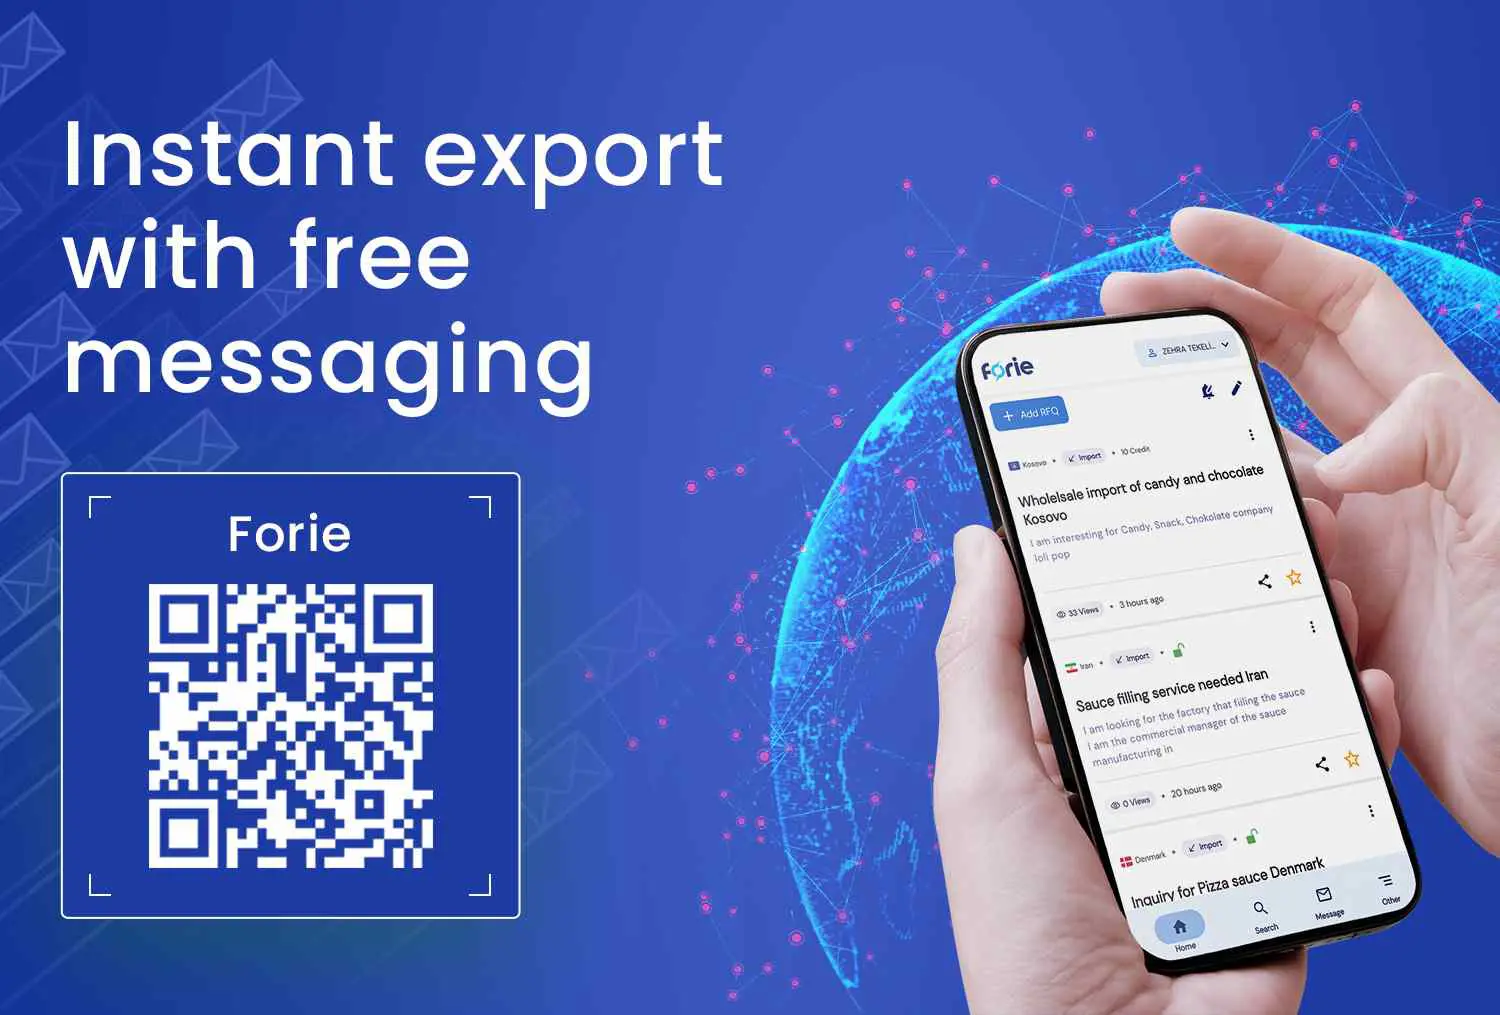 Exportação instantânea com mensagens gratuitas